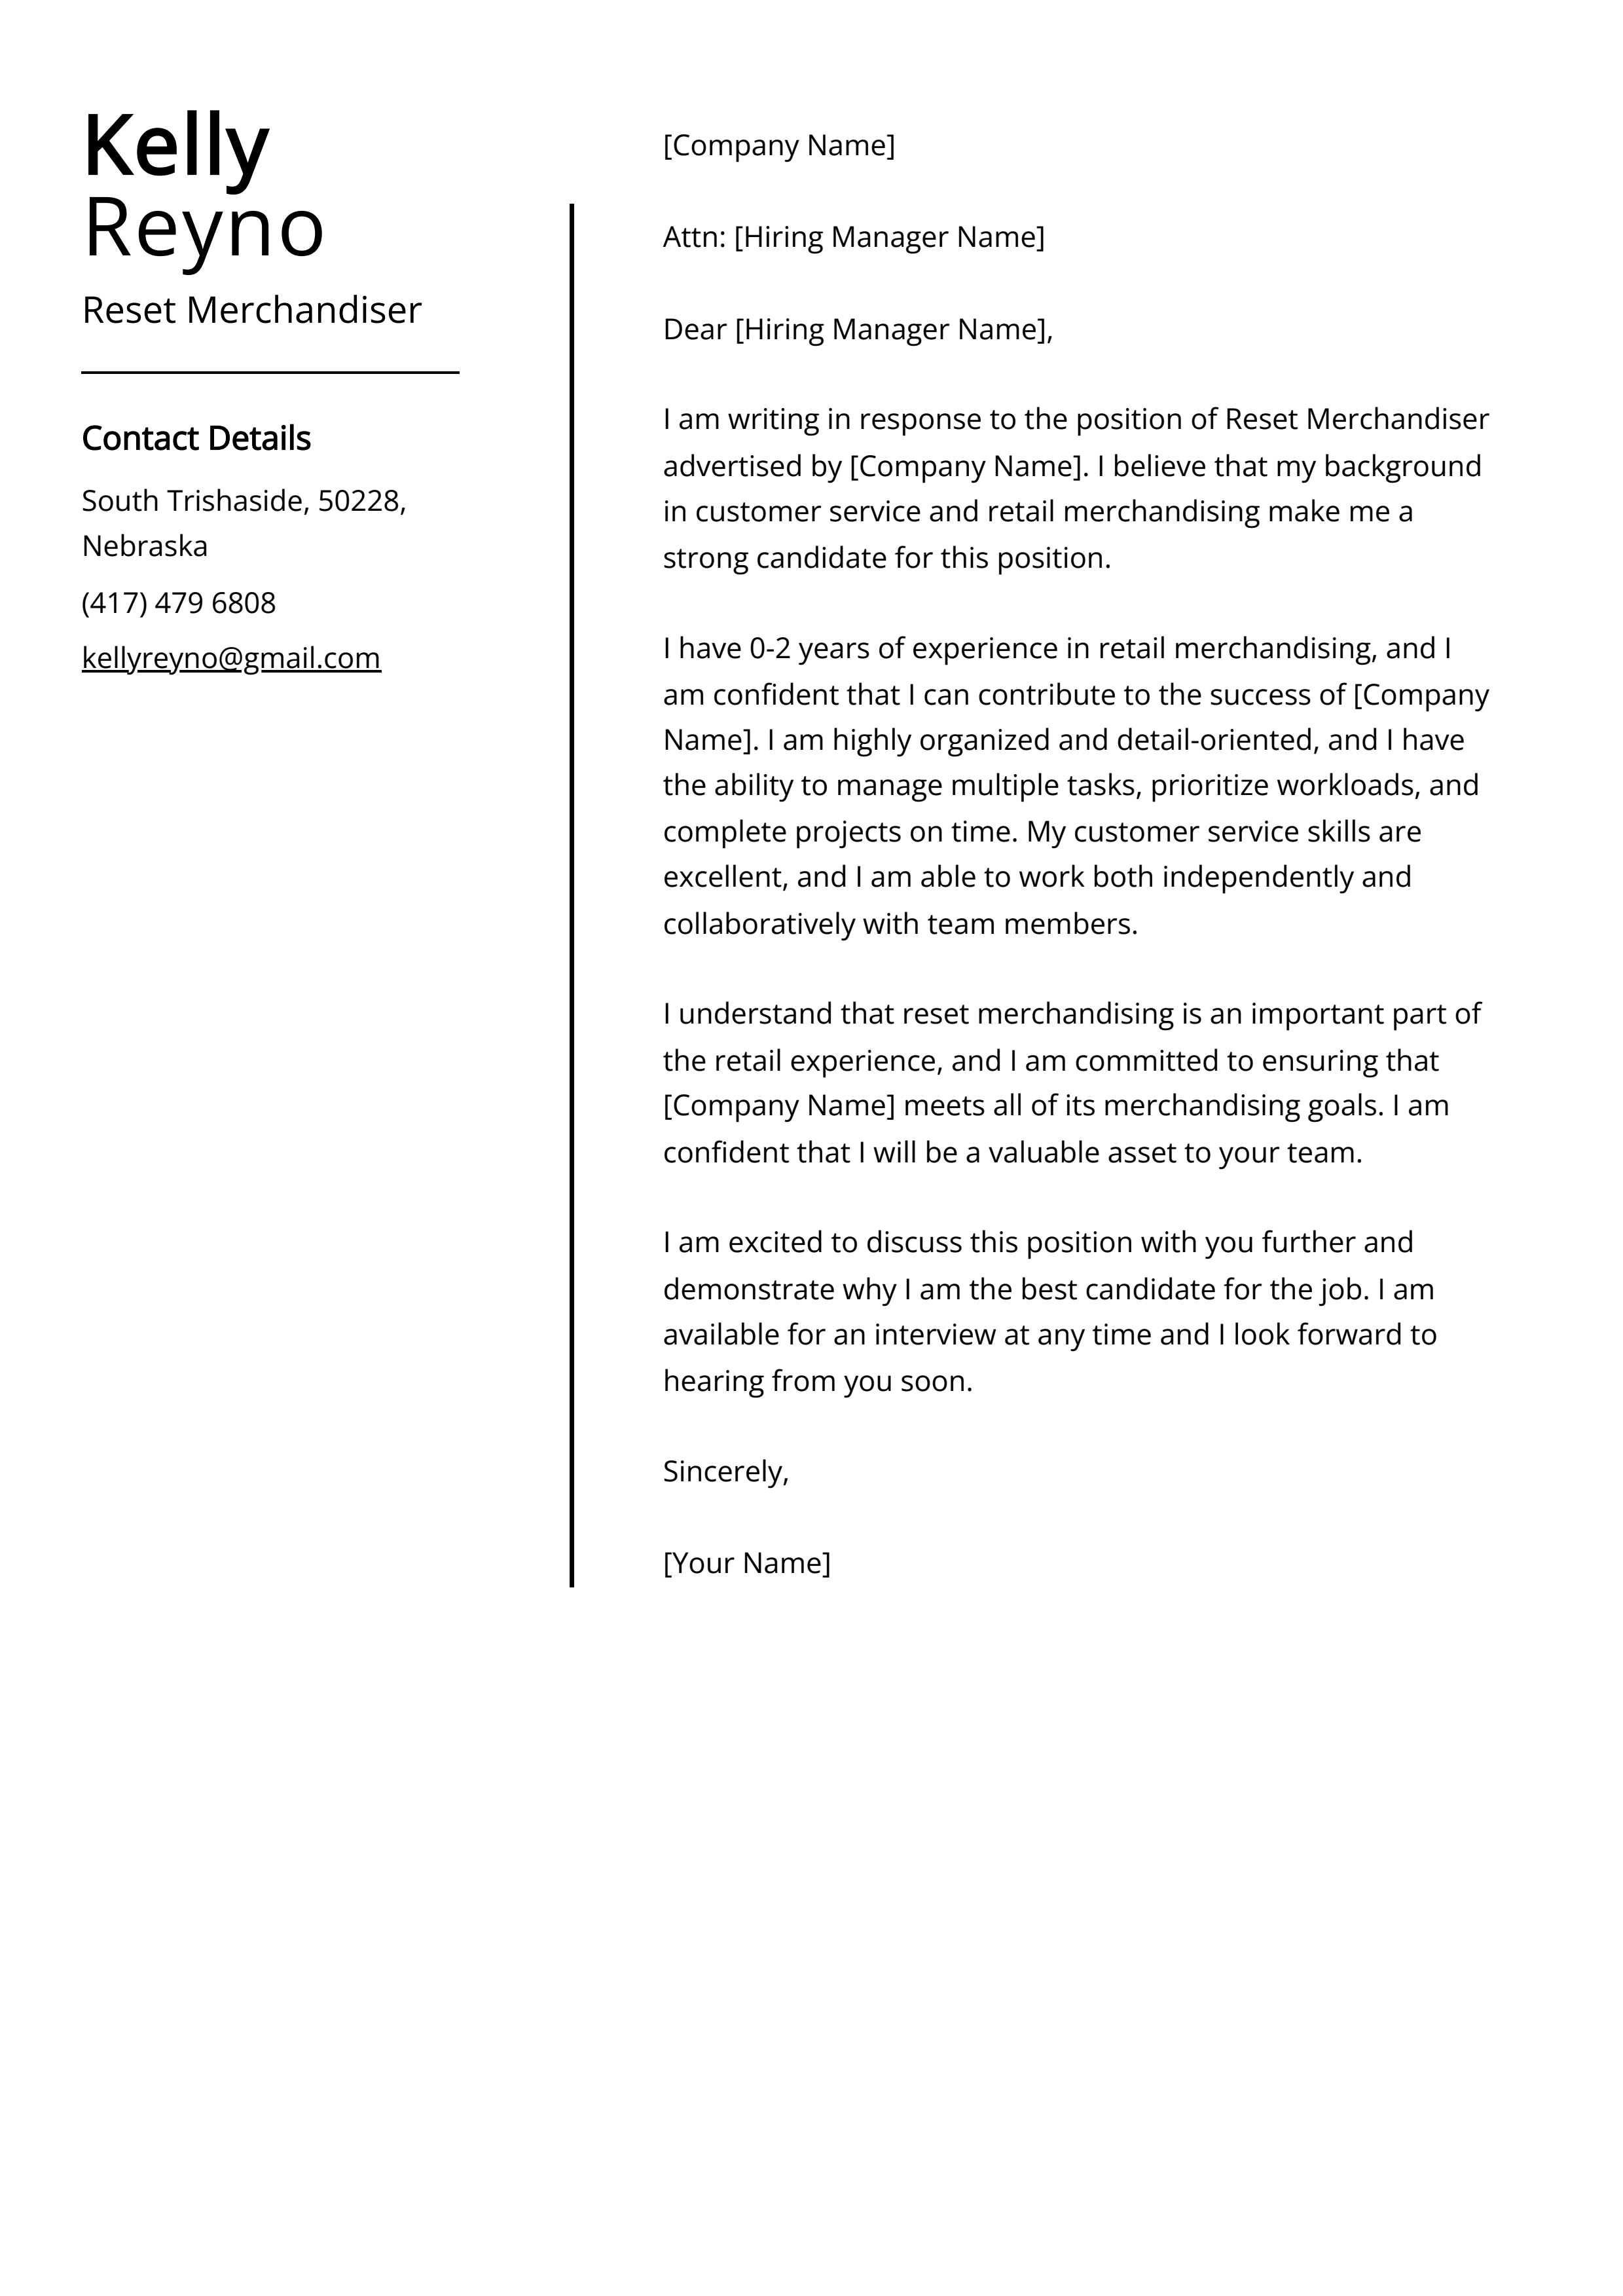 Reset Merchandiser Cover Letter Example